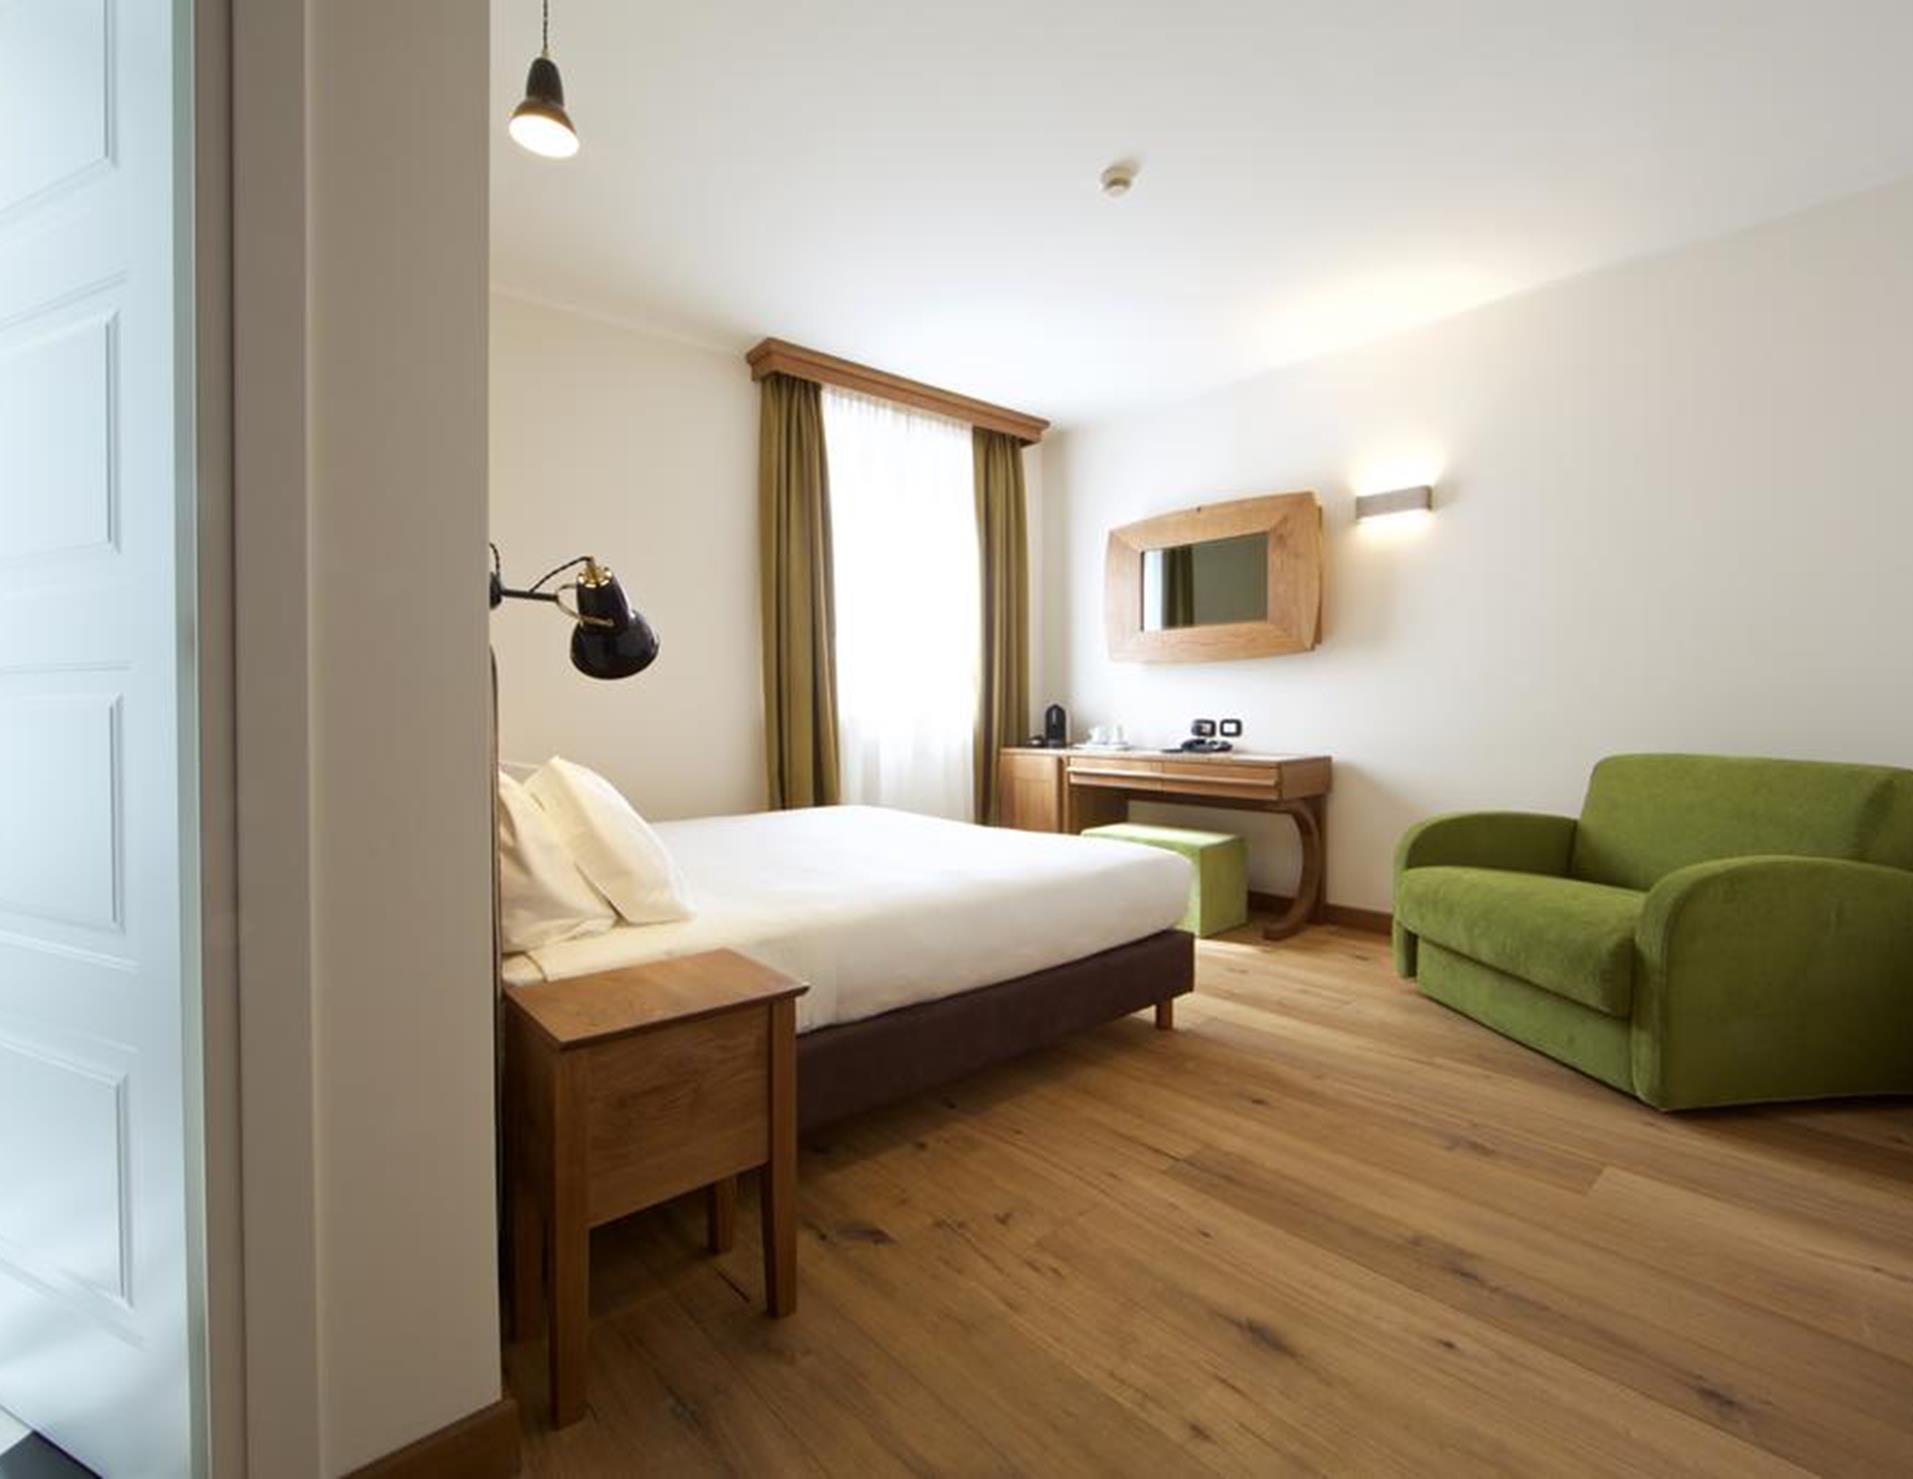 Duca D'Aosta Hotel - Room 9